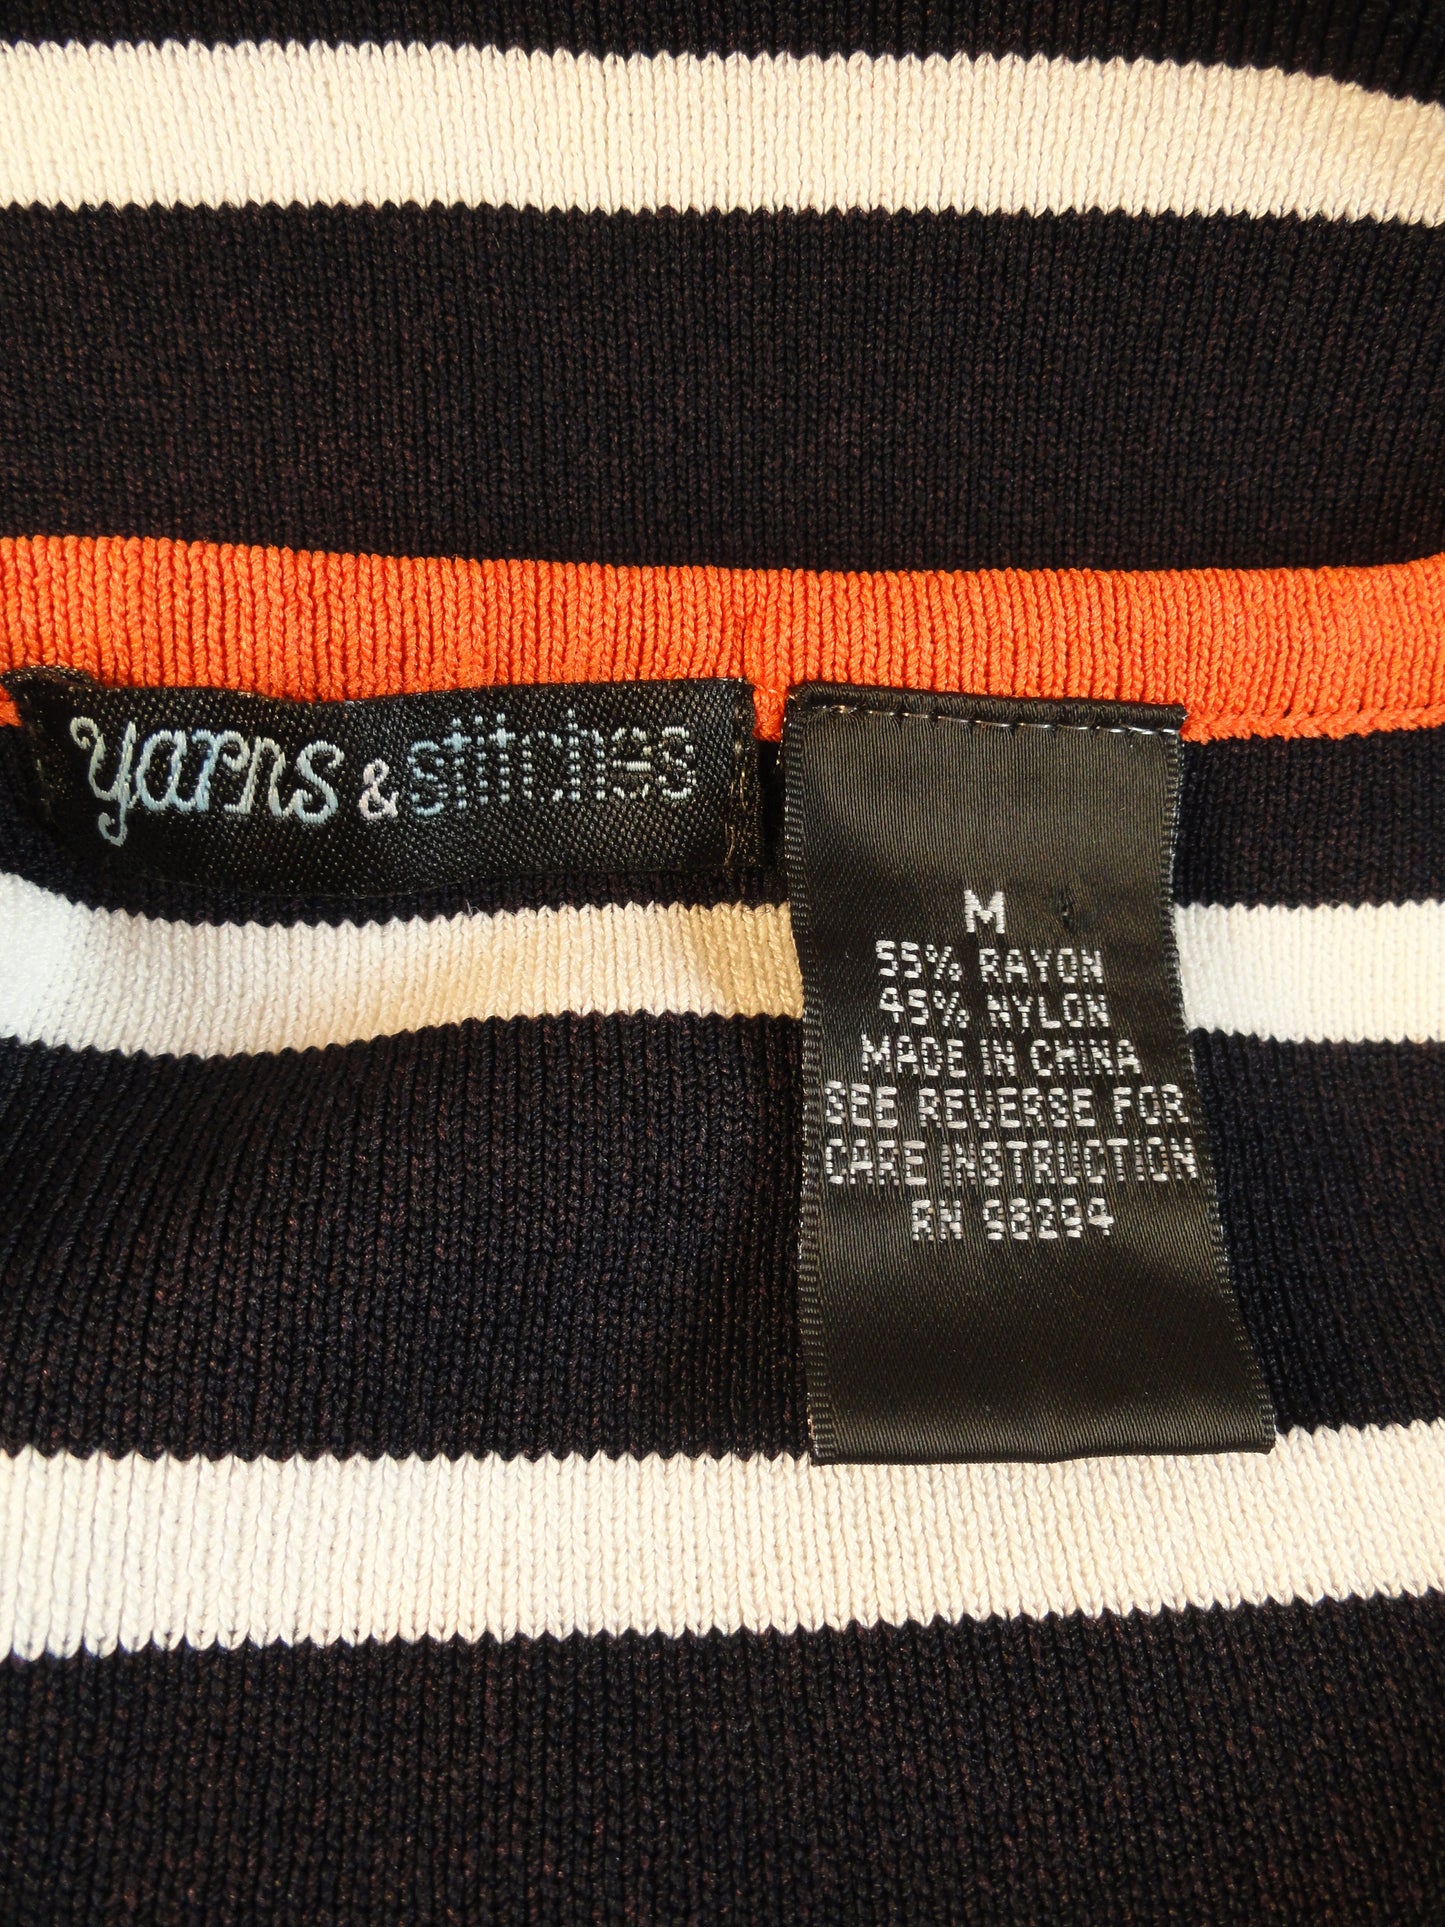 Yarn & Stitches 90's Top Navy & White Stripes Size M SKU 000024